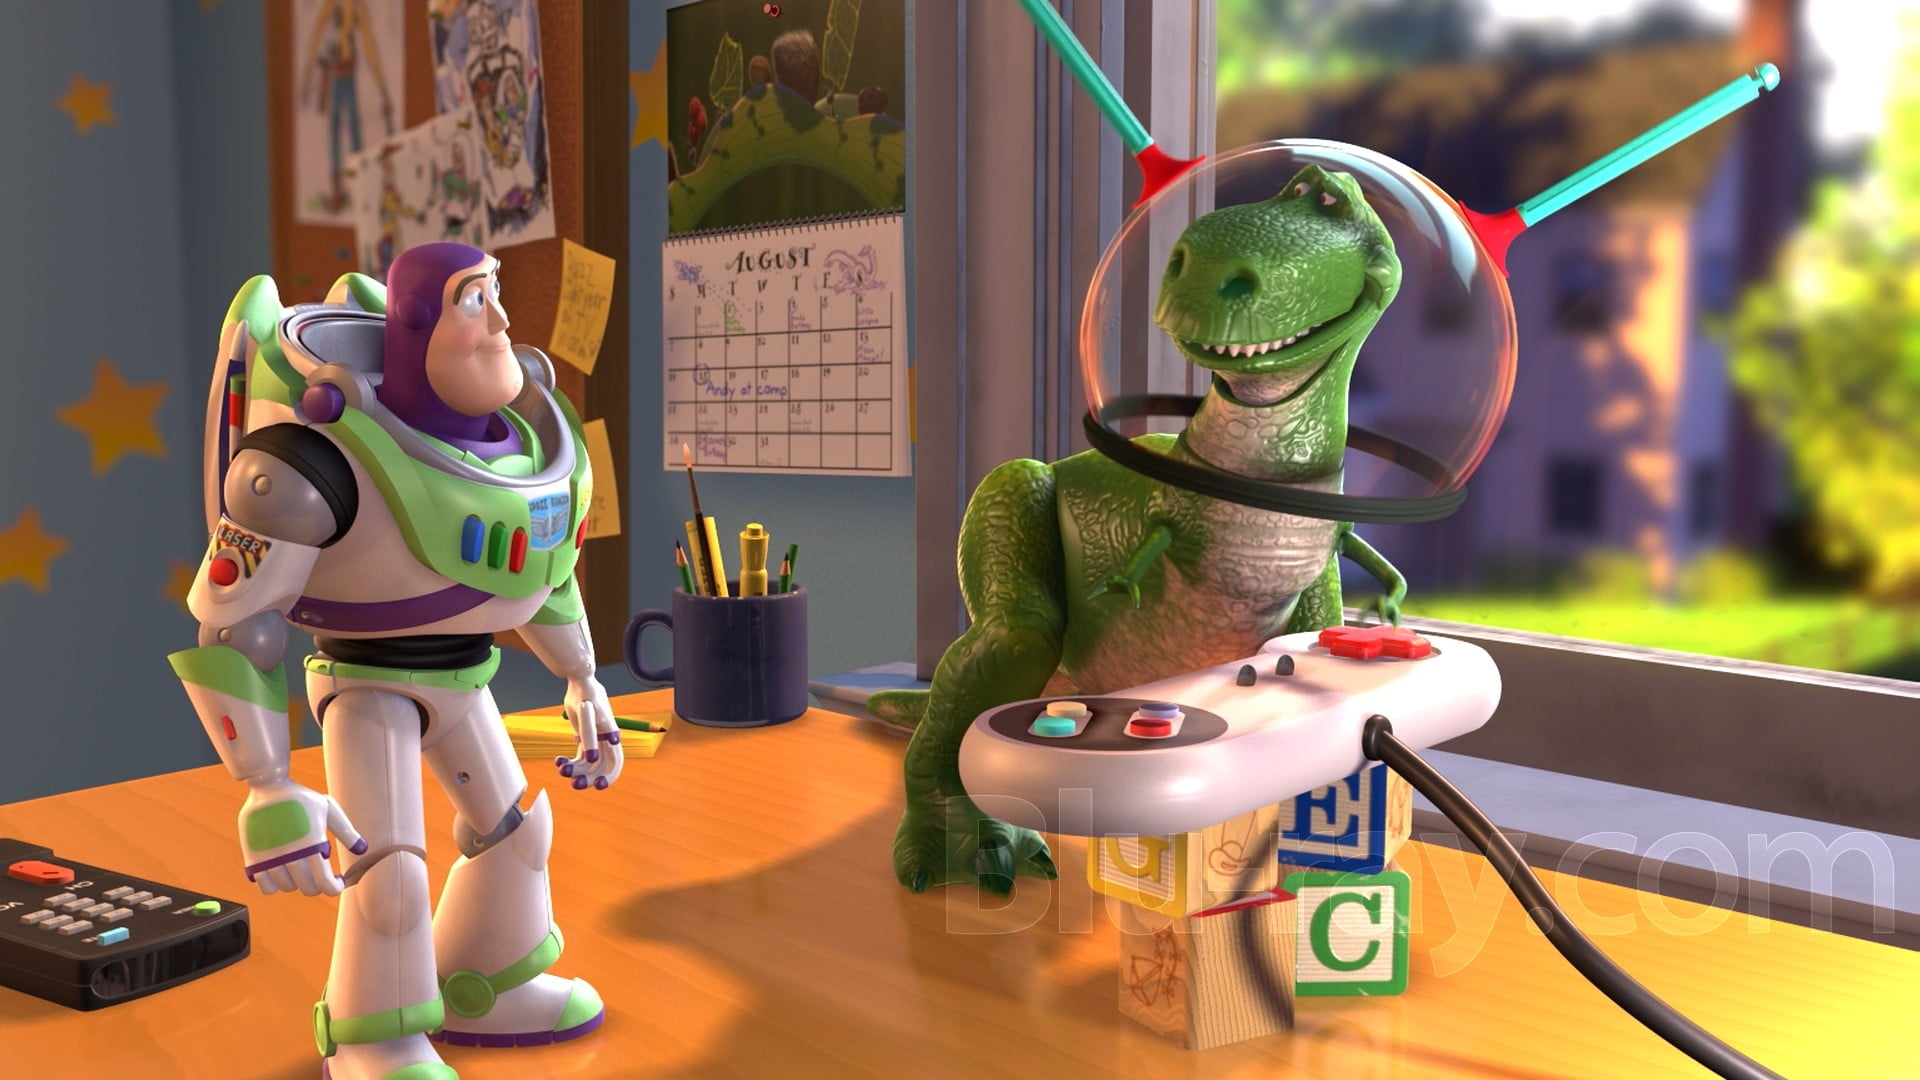 Toy Story movie still screenshot, movies, animated movies, Pixar Animation Studios